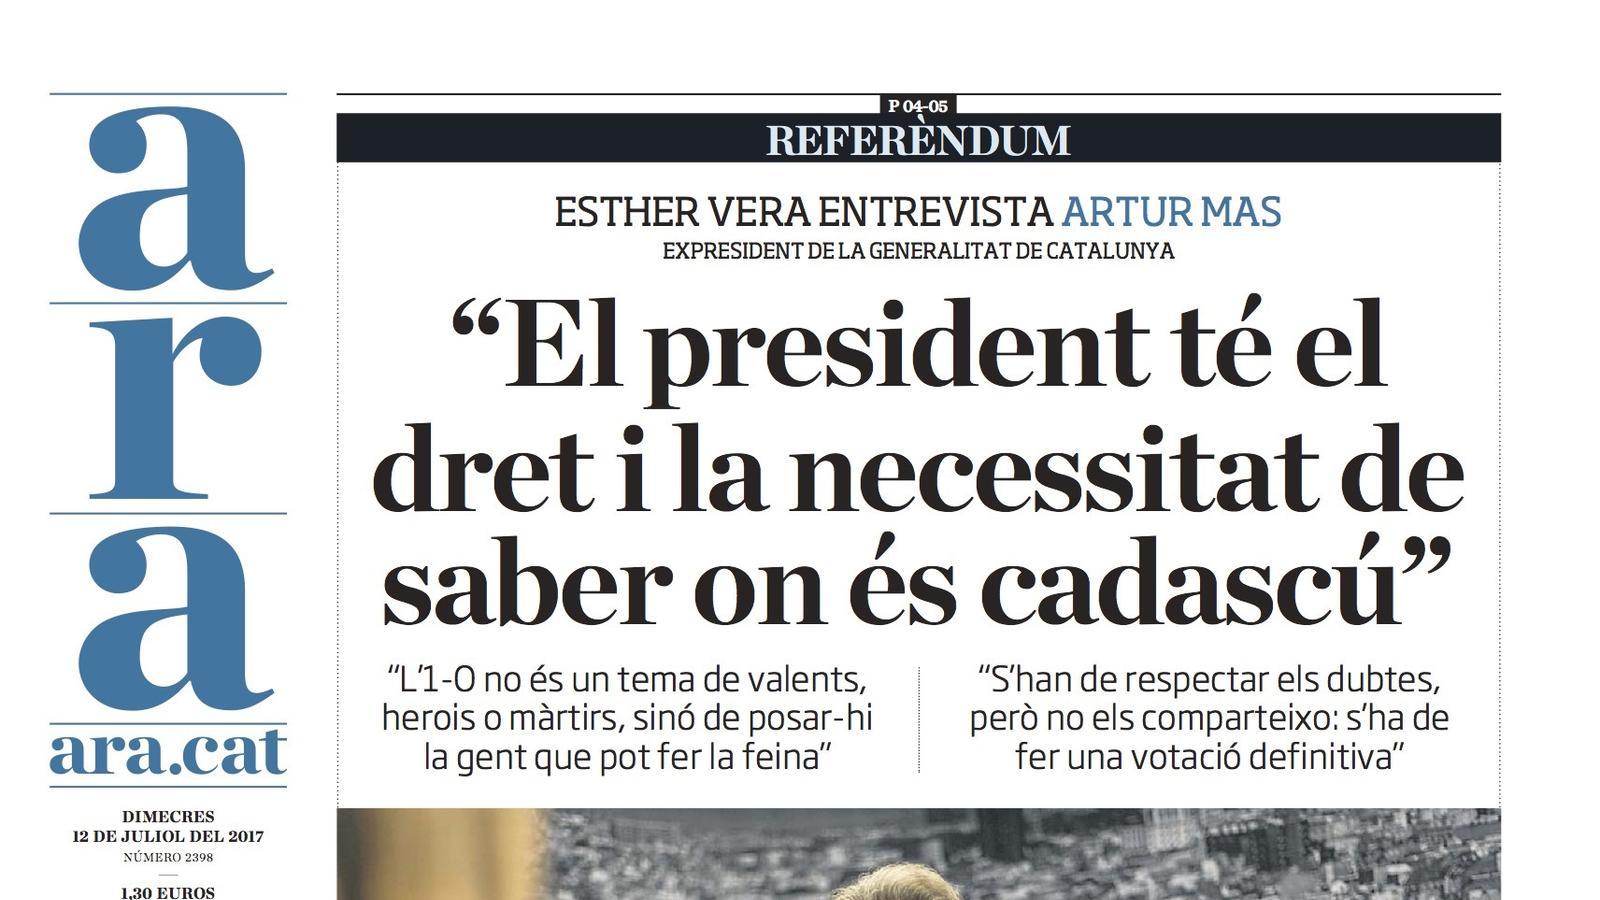 "Mas: 'El president té el dret i la necessitat de saber on és cadascú'", portada de l'ARA